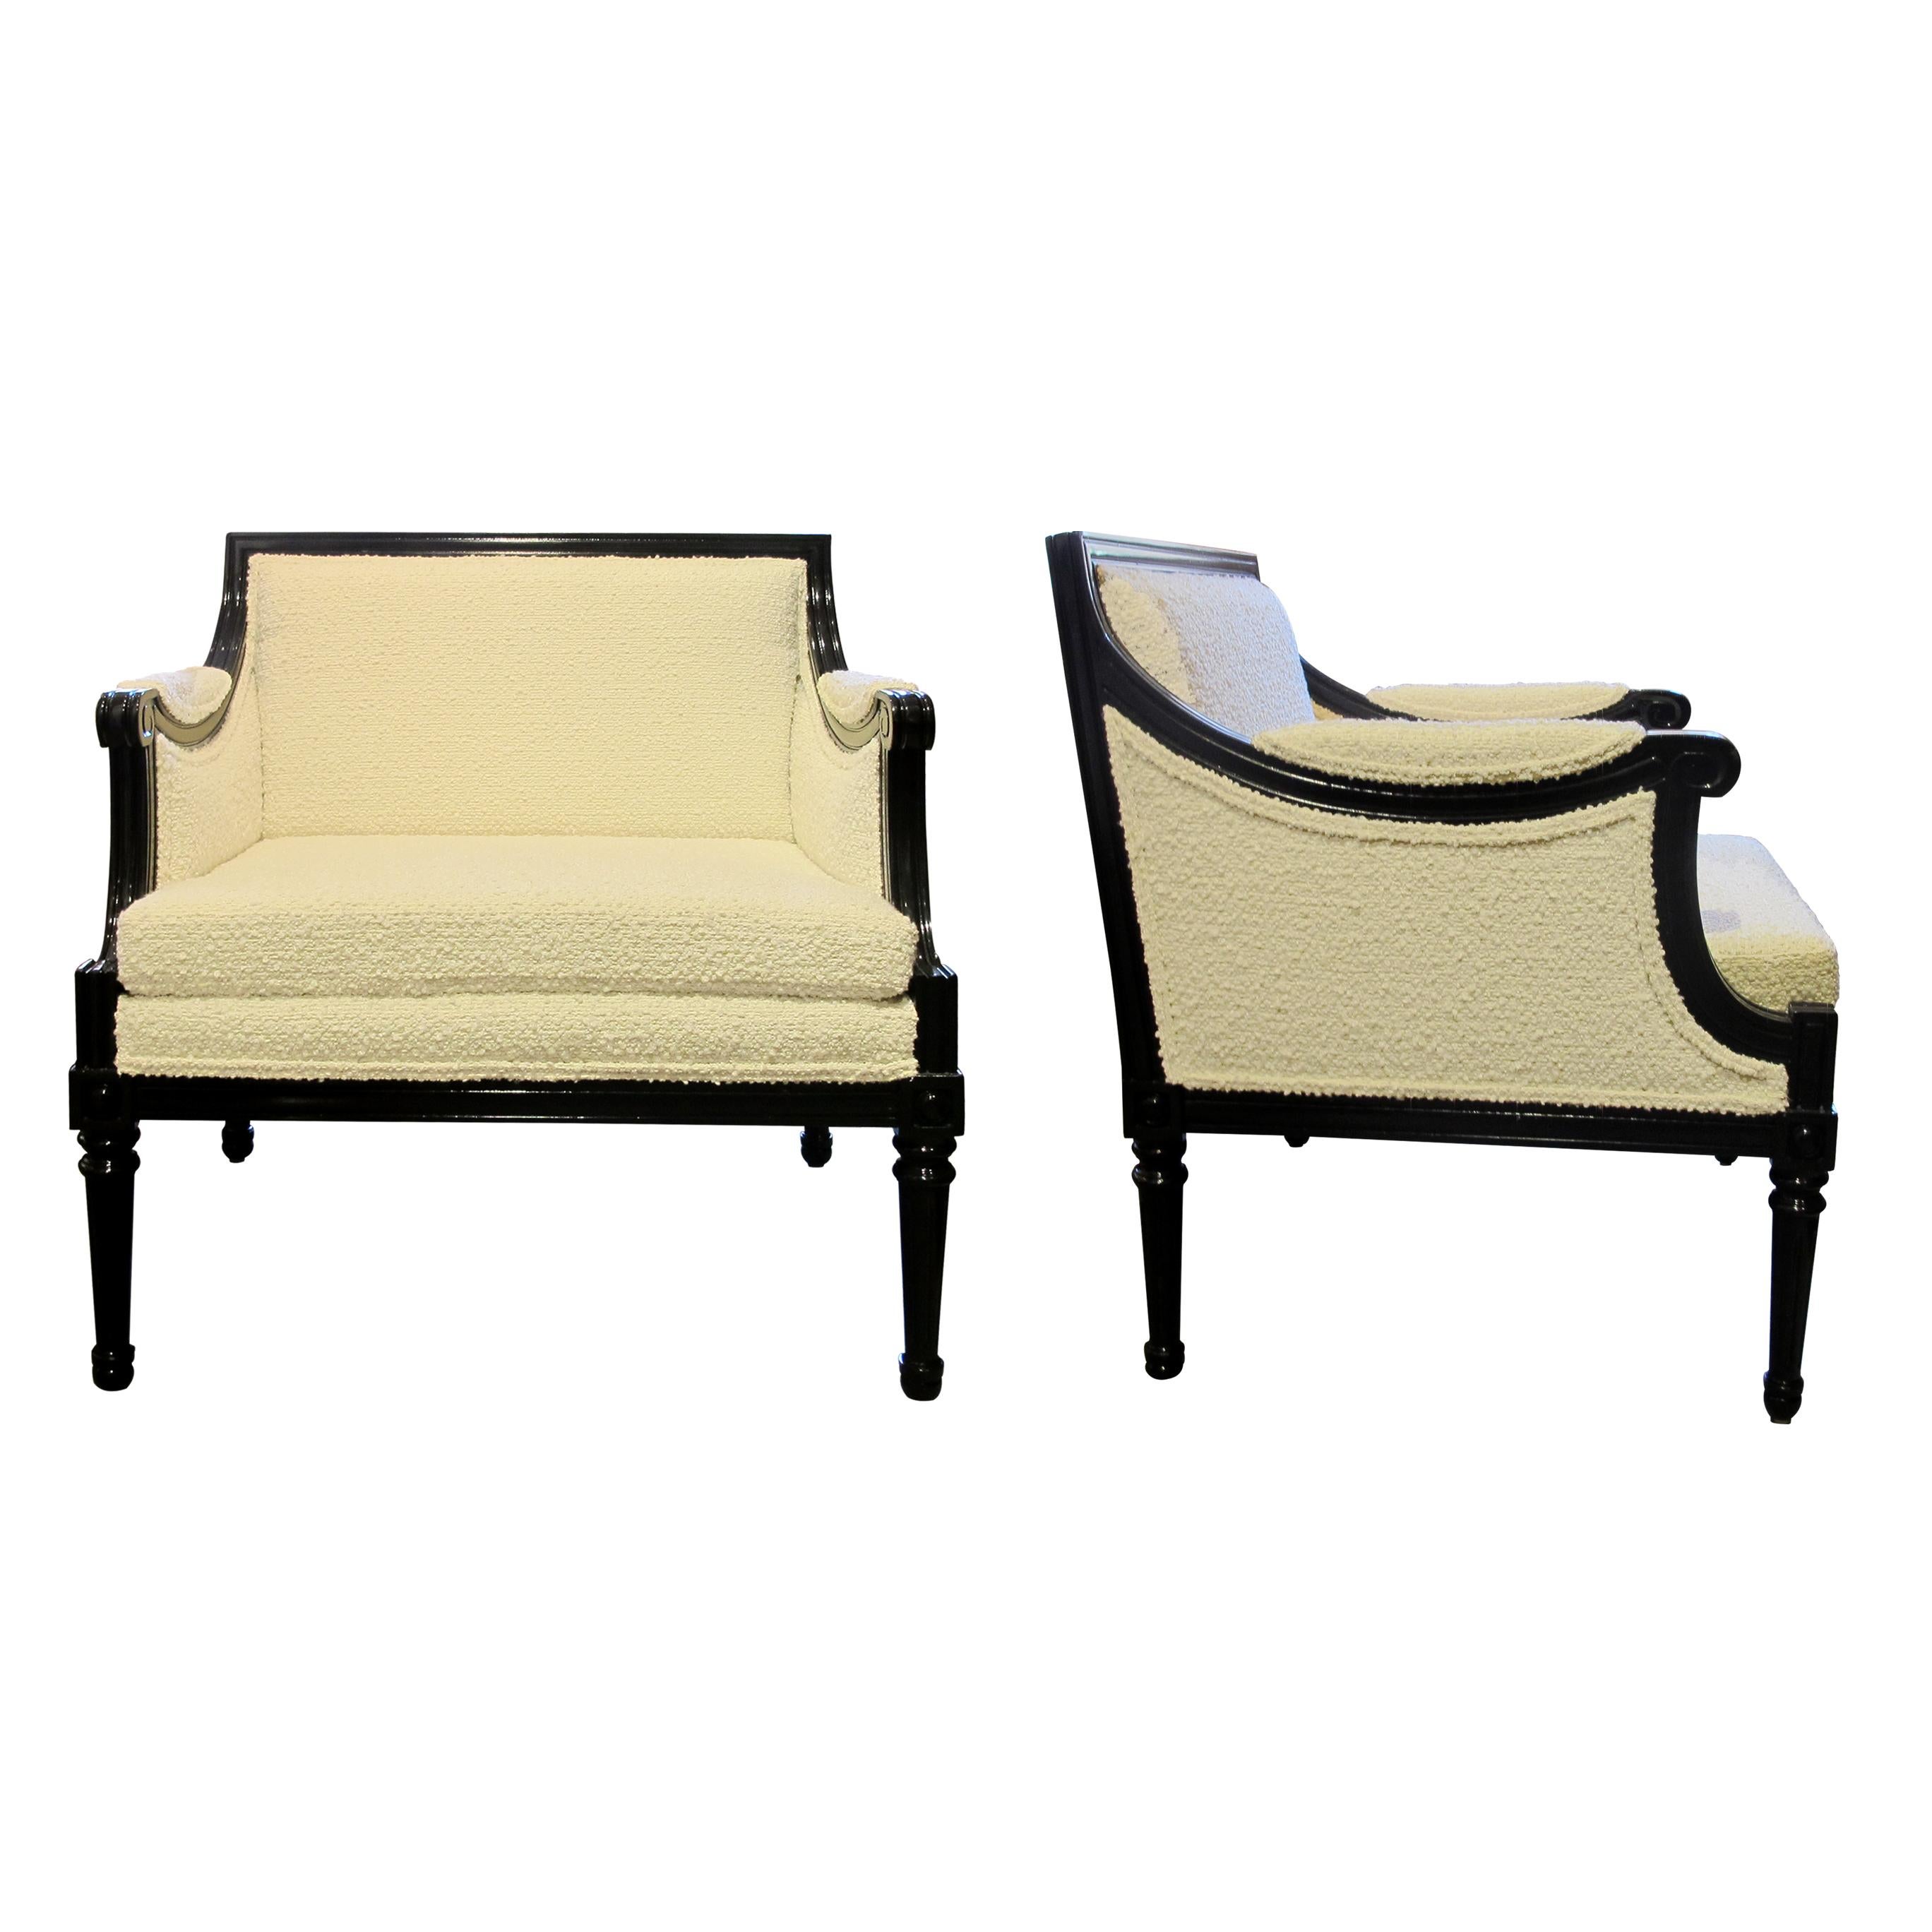 Ces confortables fauteuils tubulaires carrés sont un classique du design suédois des années 1960. Elles ont été retapissées dans un tissu bouclé crème clair et les cadres en noyer ont été laqués en noir semi-brillant, ce qui leur confère un aspect